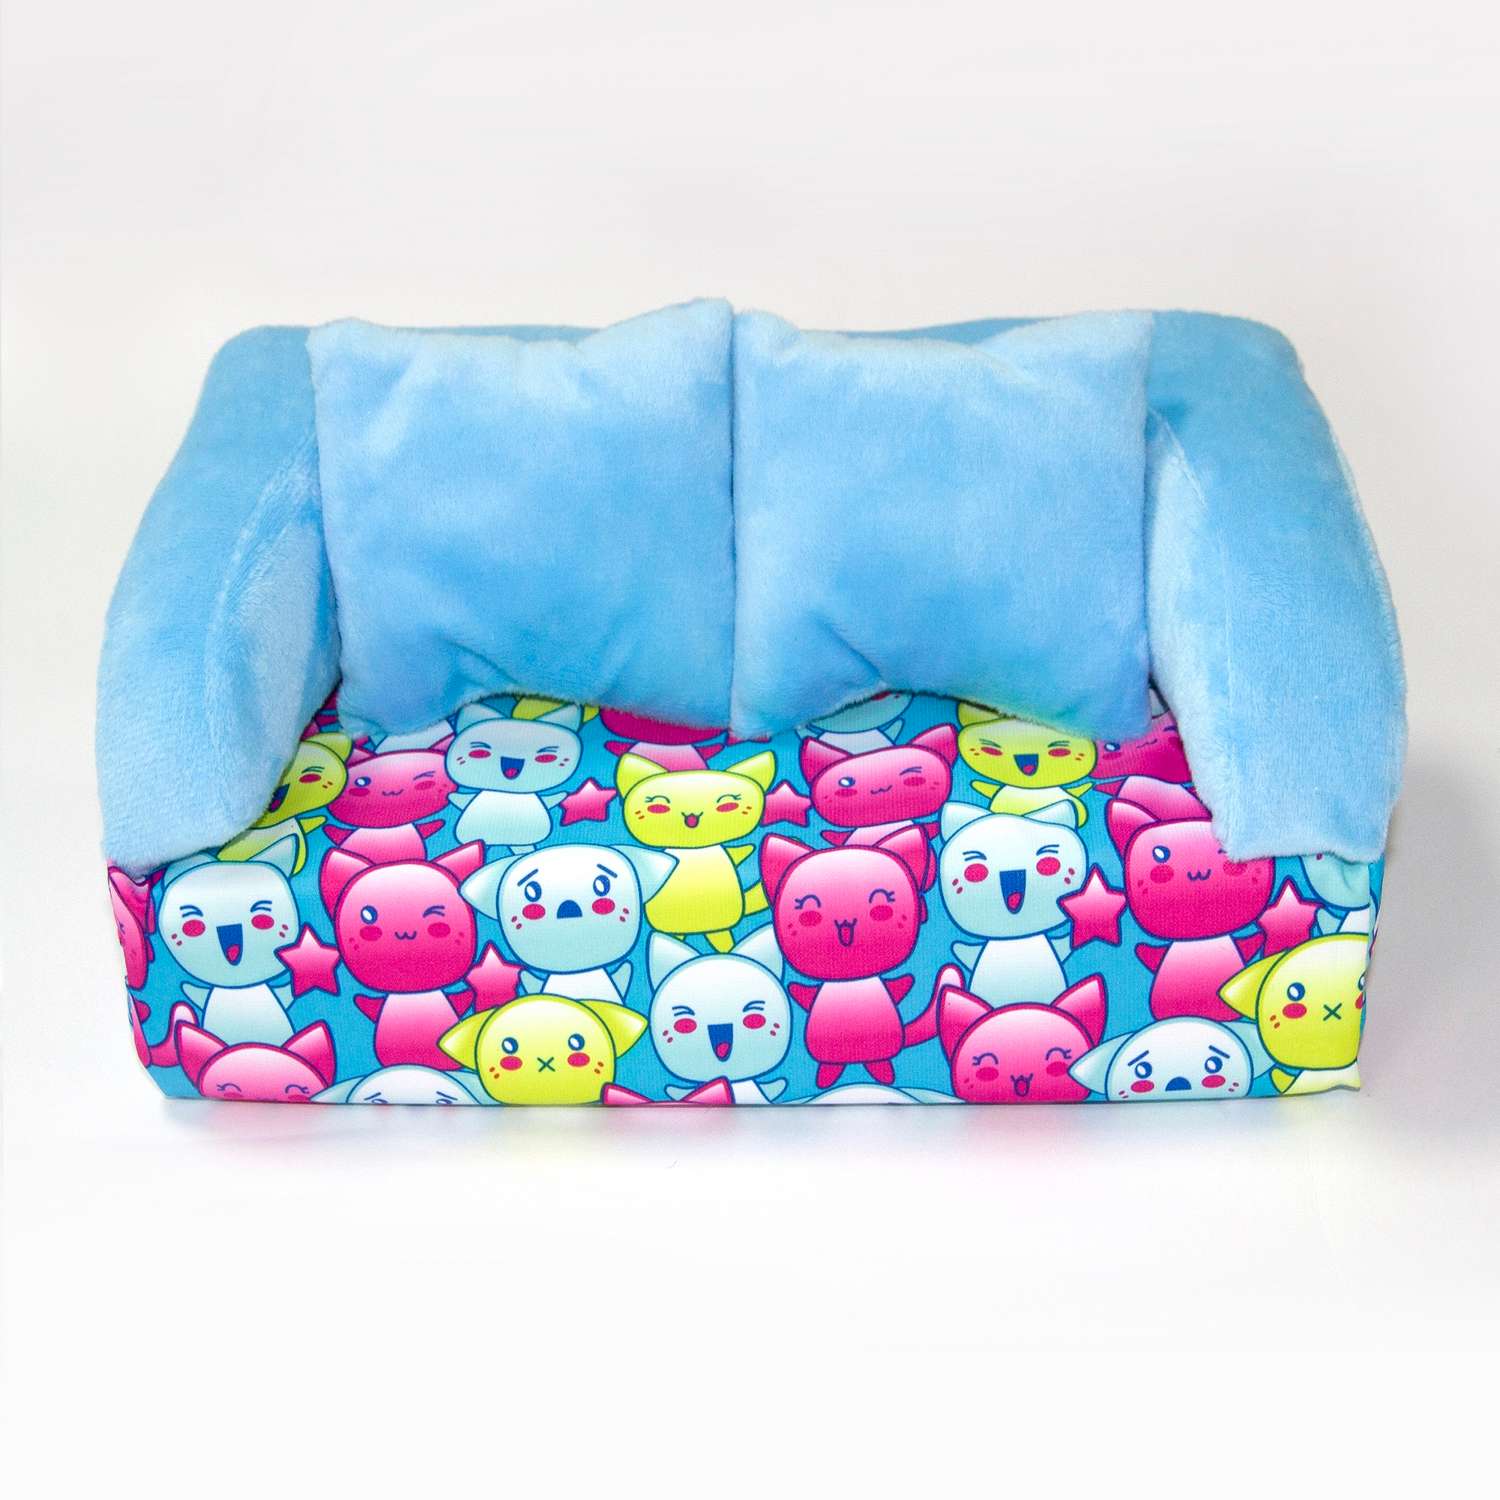 Набор мебели для кукол Belon familia Принт хор котят бирюзовый диван с 2 подушками НМ-004/3-32 - фото 1